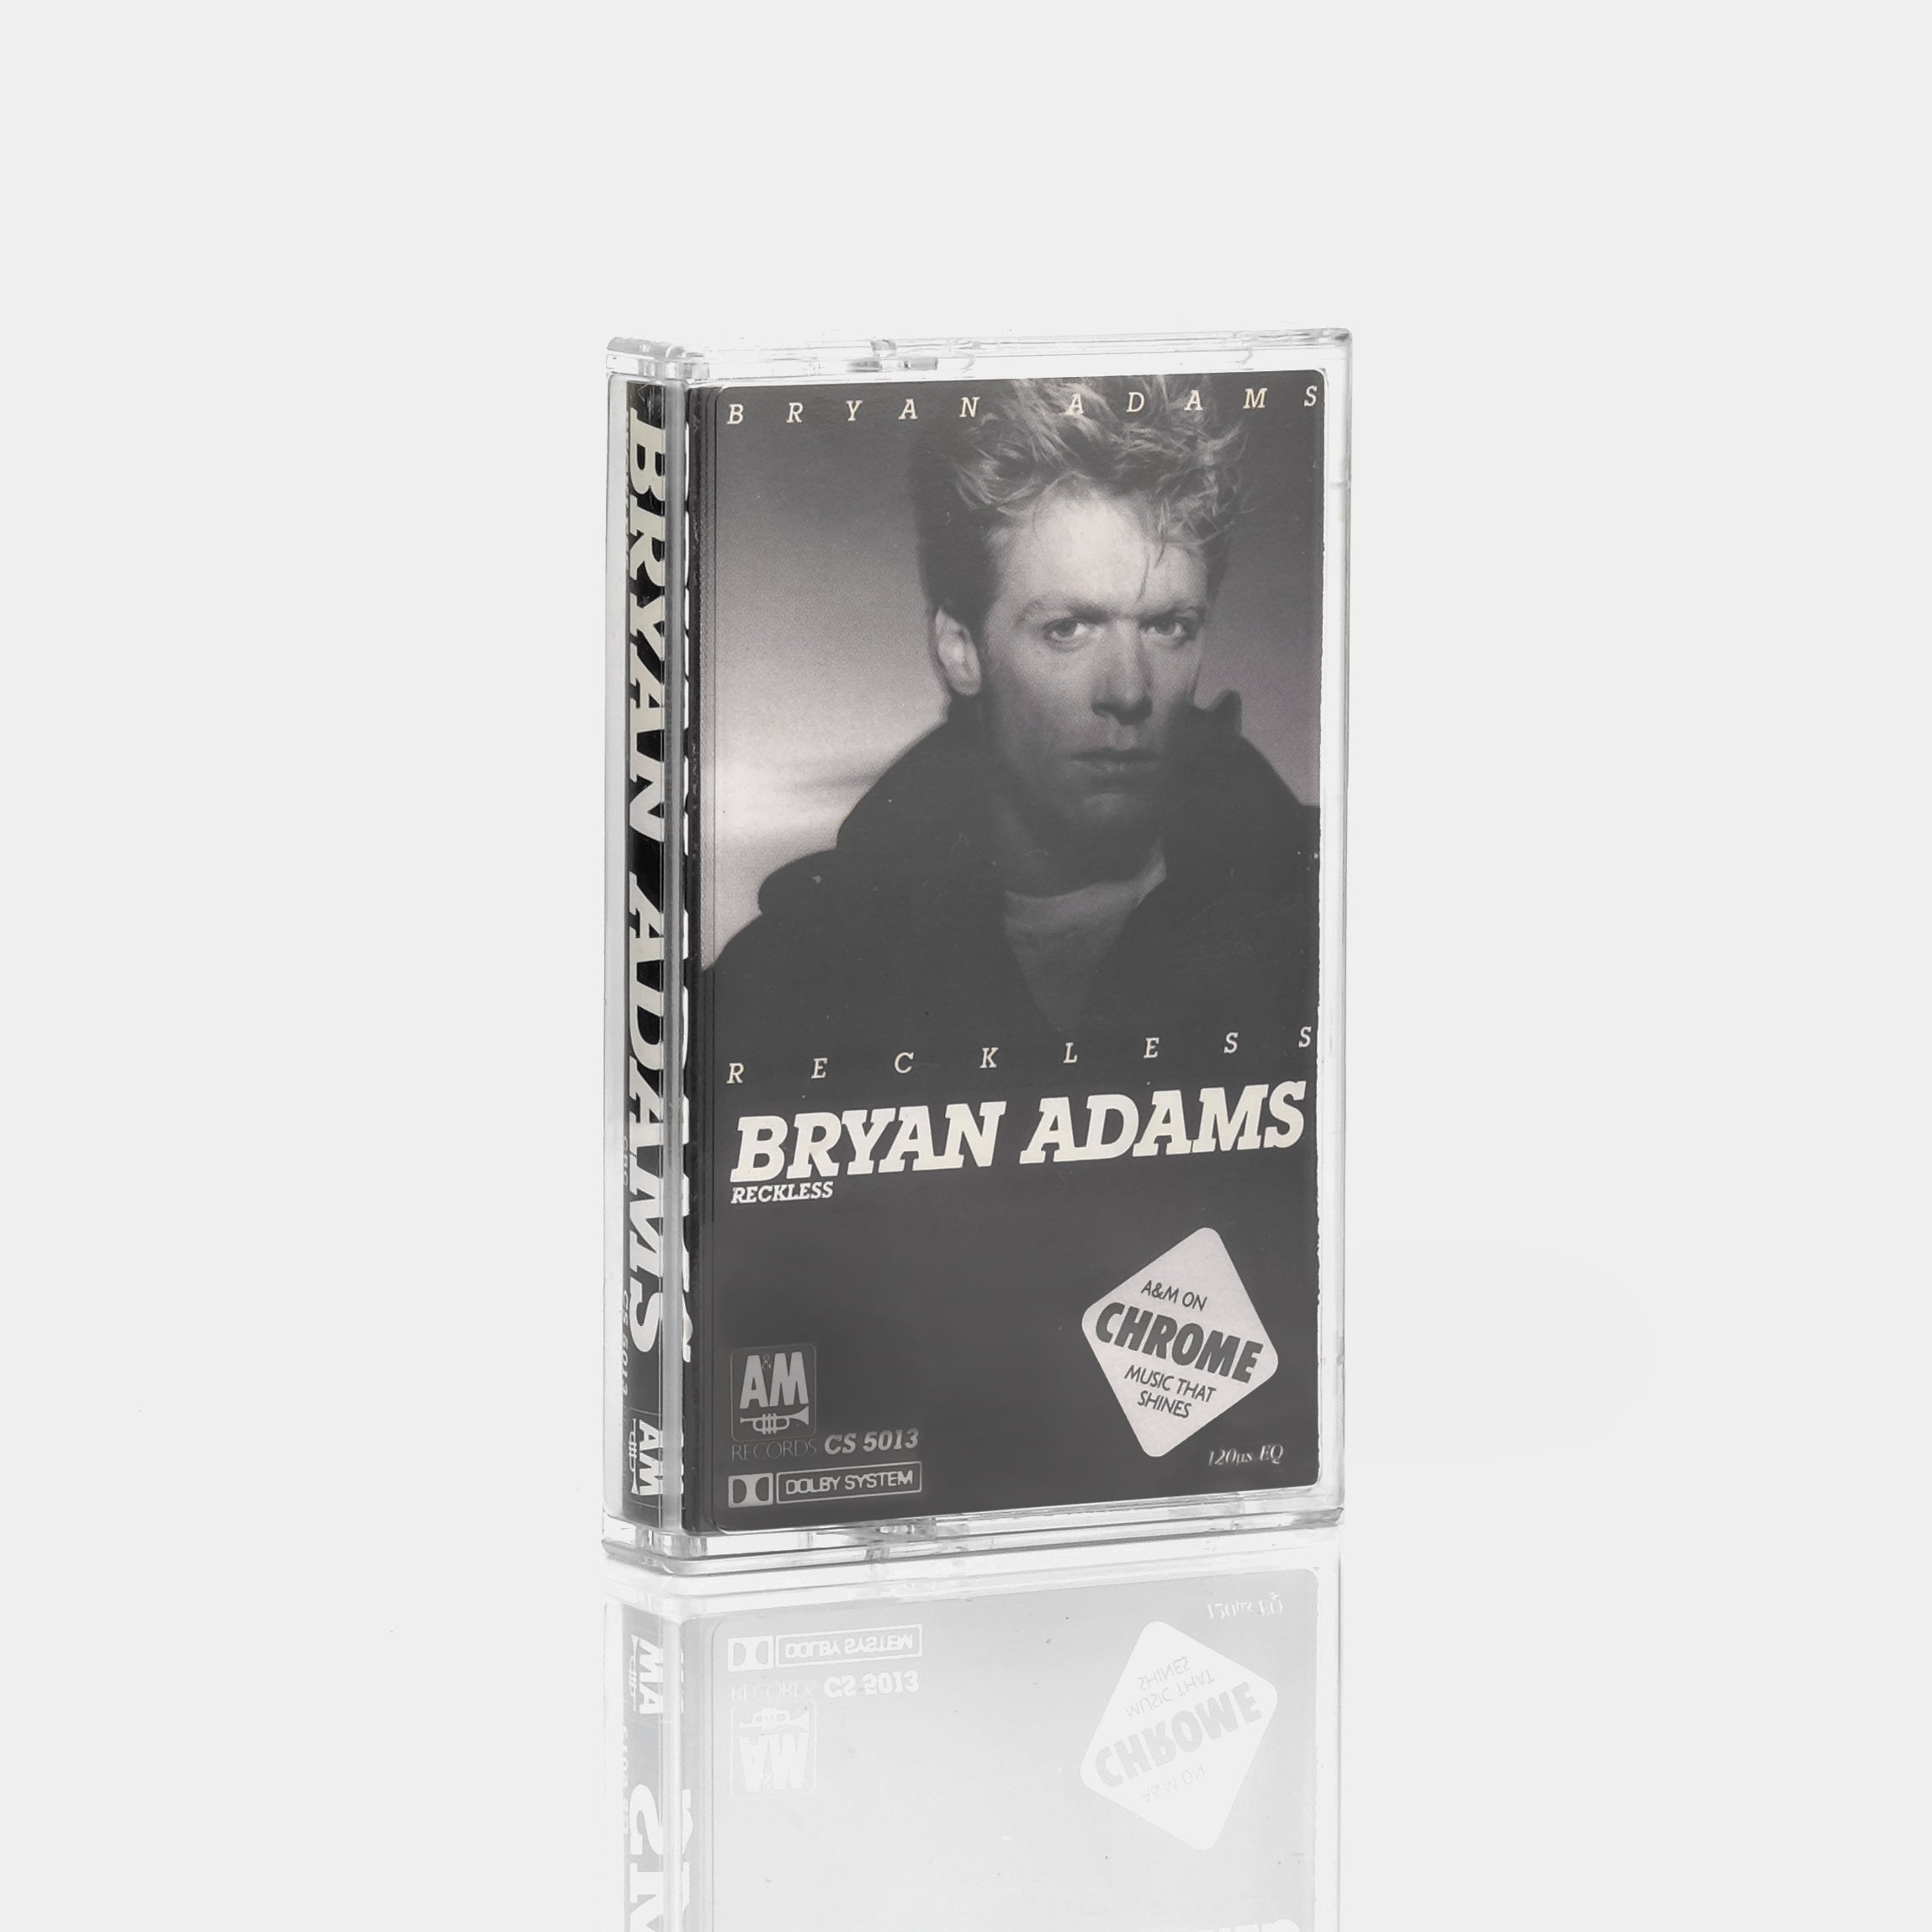 Bryan Adams - Reckless Cassette Tape